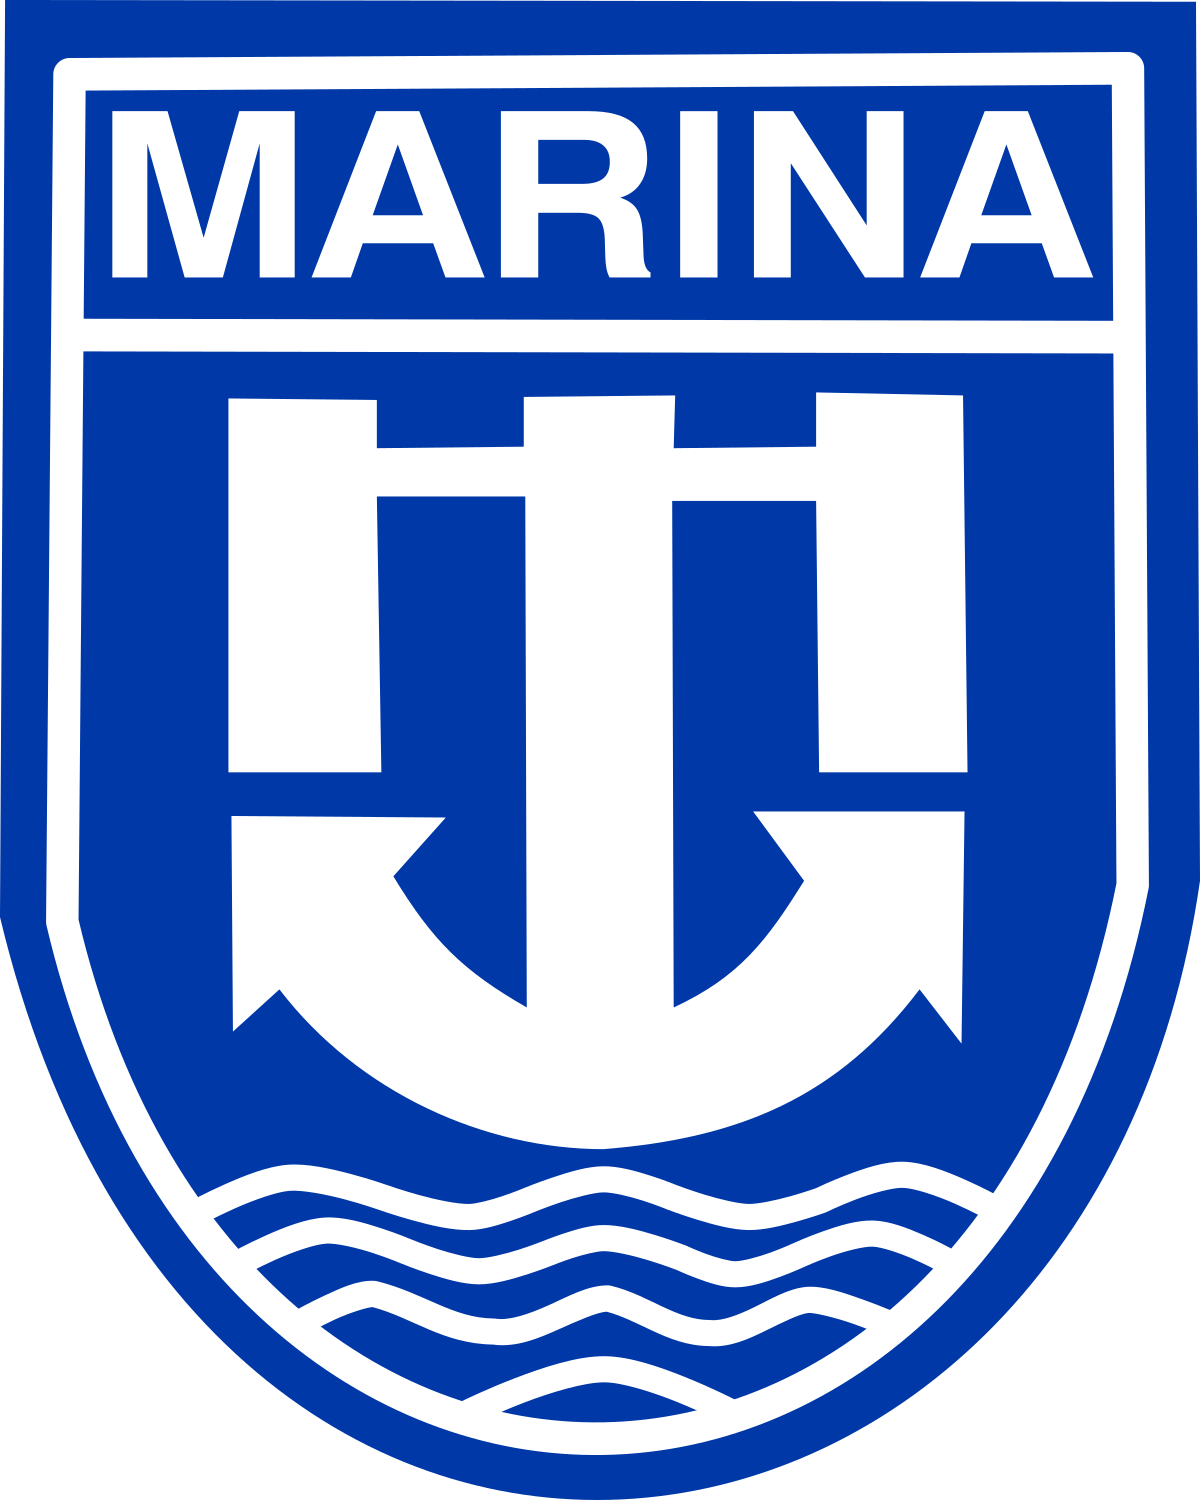 marina